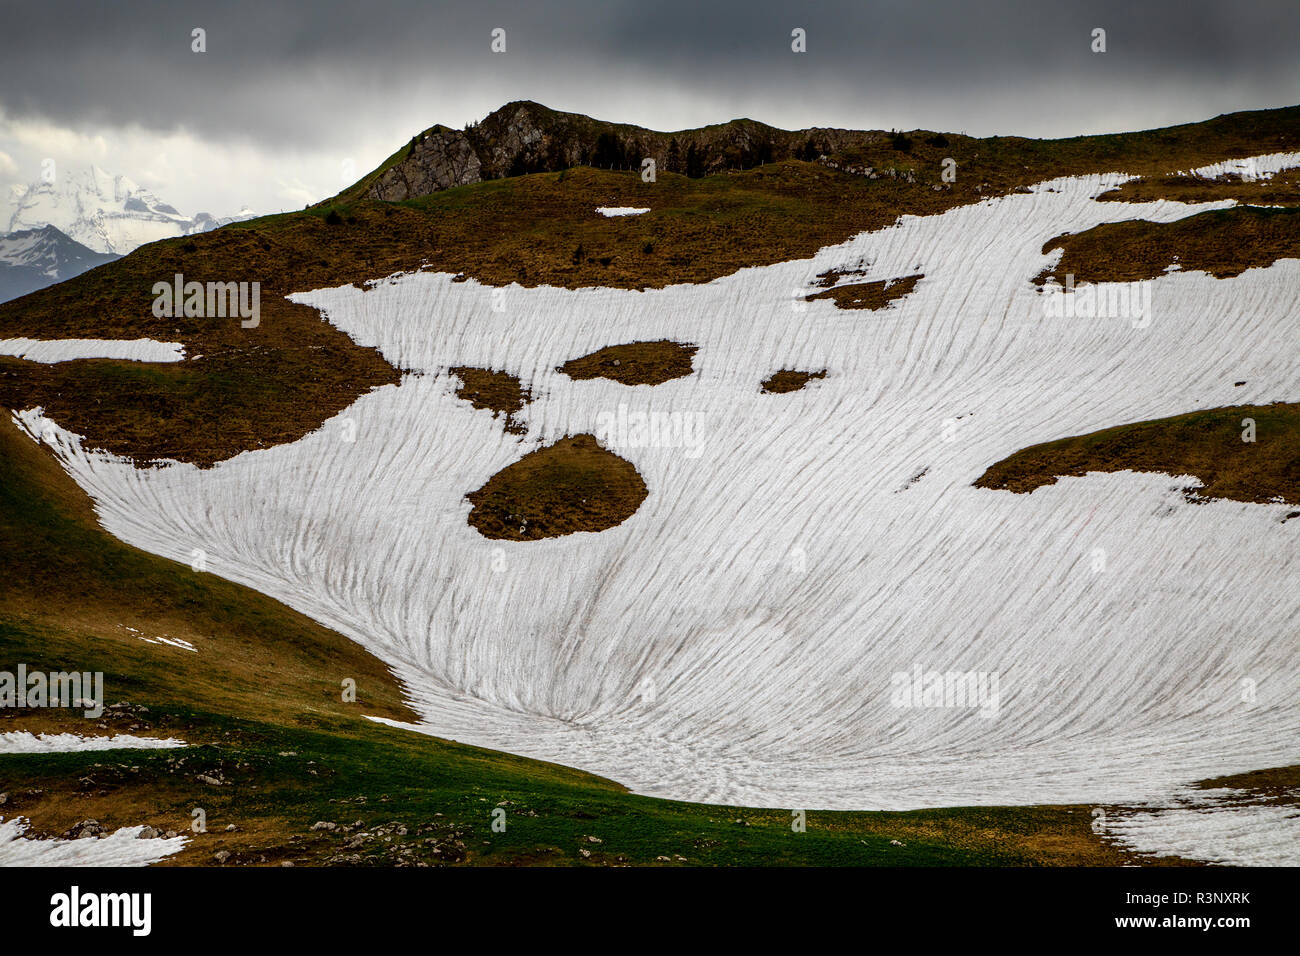 Macchie di neve bianca si vedono nel Gurnigel Pass in Svizzera. I ghiacciai delle Alpi si stanno sciogliendo rapidamente a causa del riscaldamento globale, e molti di essi sono previsti per essere andati entro il 2070. La copertura bianca della neve riflette la luce solare e il calore molto meglio del ghiaccio più scuro. L'inverno del 2017/2018 ha visto quantità record di neve nelle alpi, ma le alte temperature record in estate ha fuso la maggior parte di esso già nel mese di giugno. Foto Stock